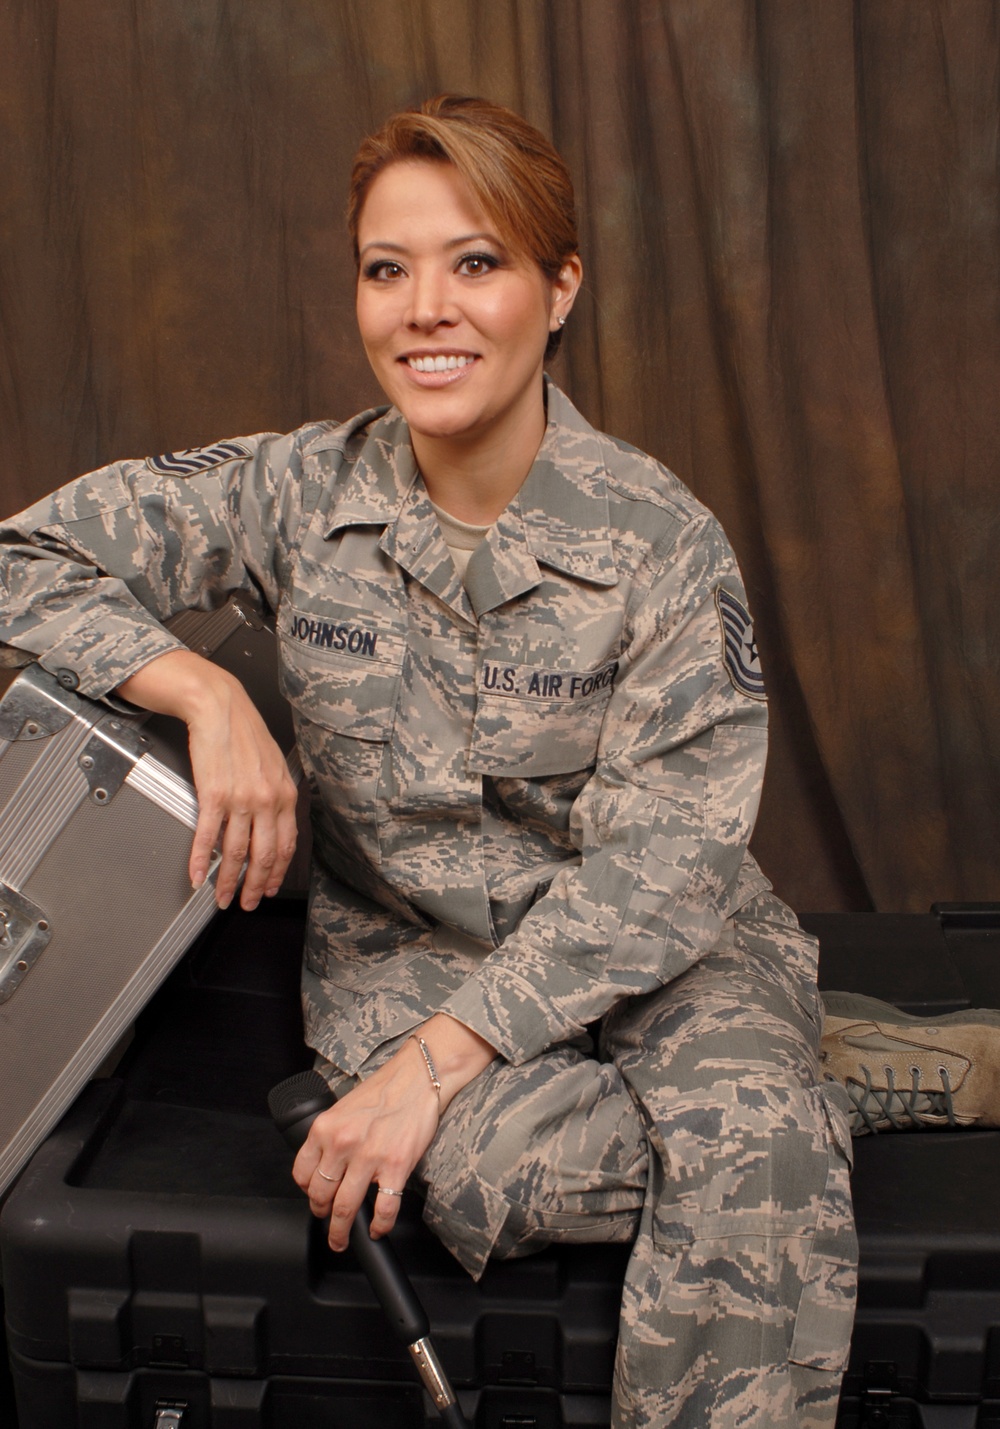 Meet Tech. Sgt. Angie Johnson